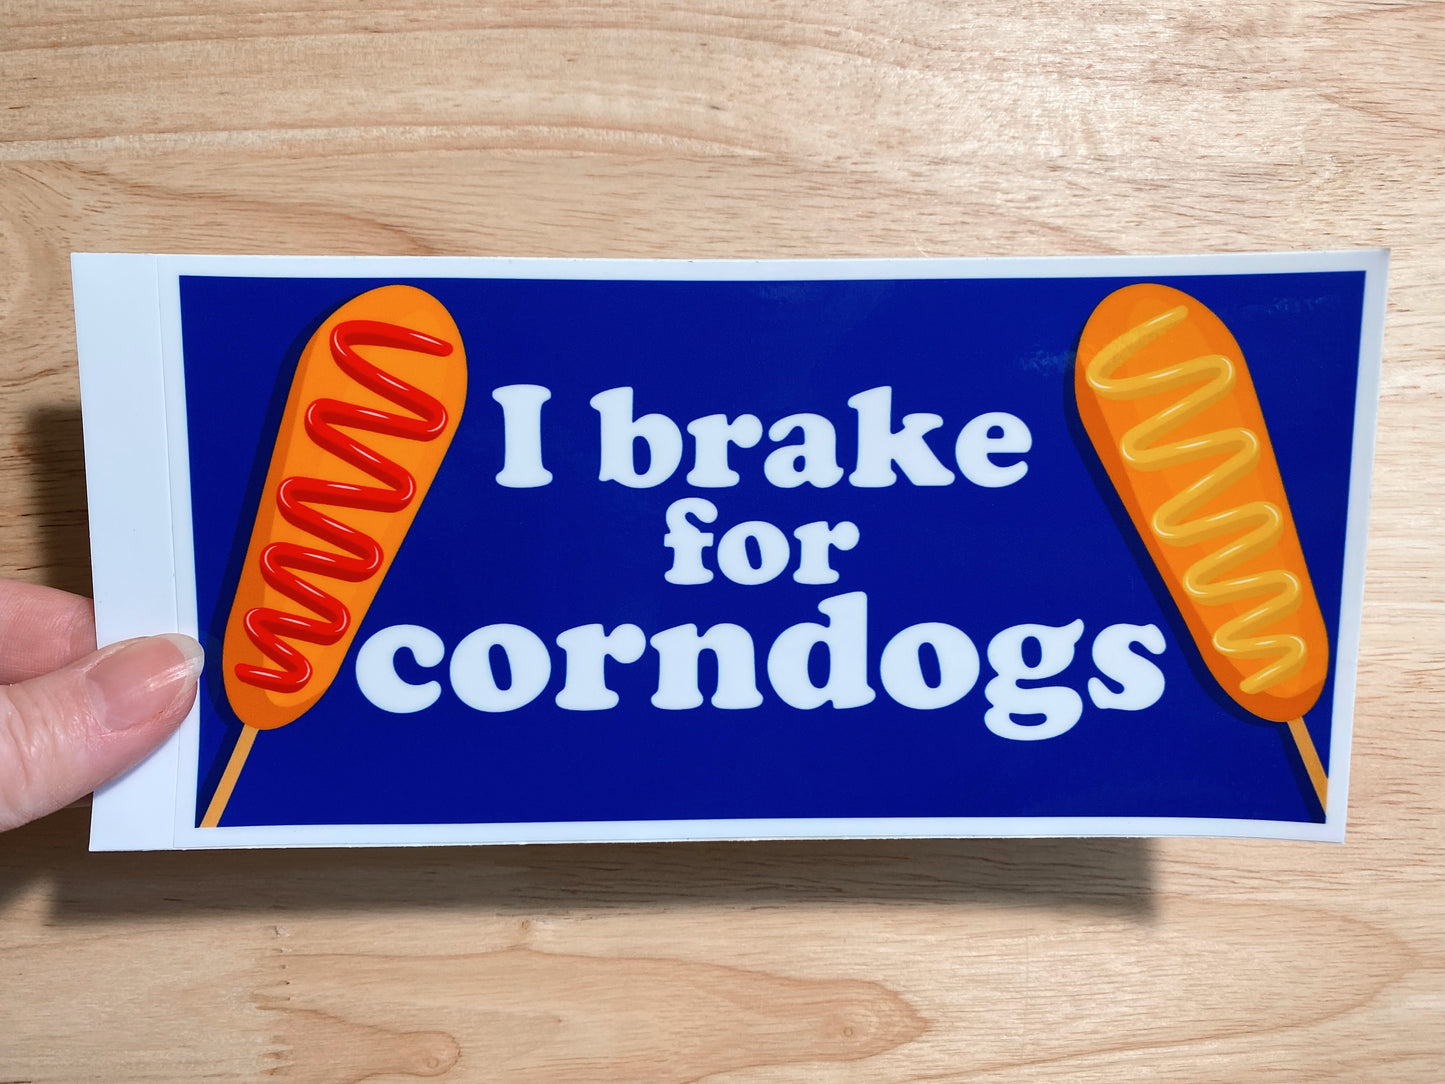 I brake for corndogs Bumper Sticker